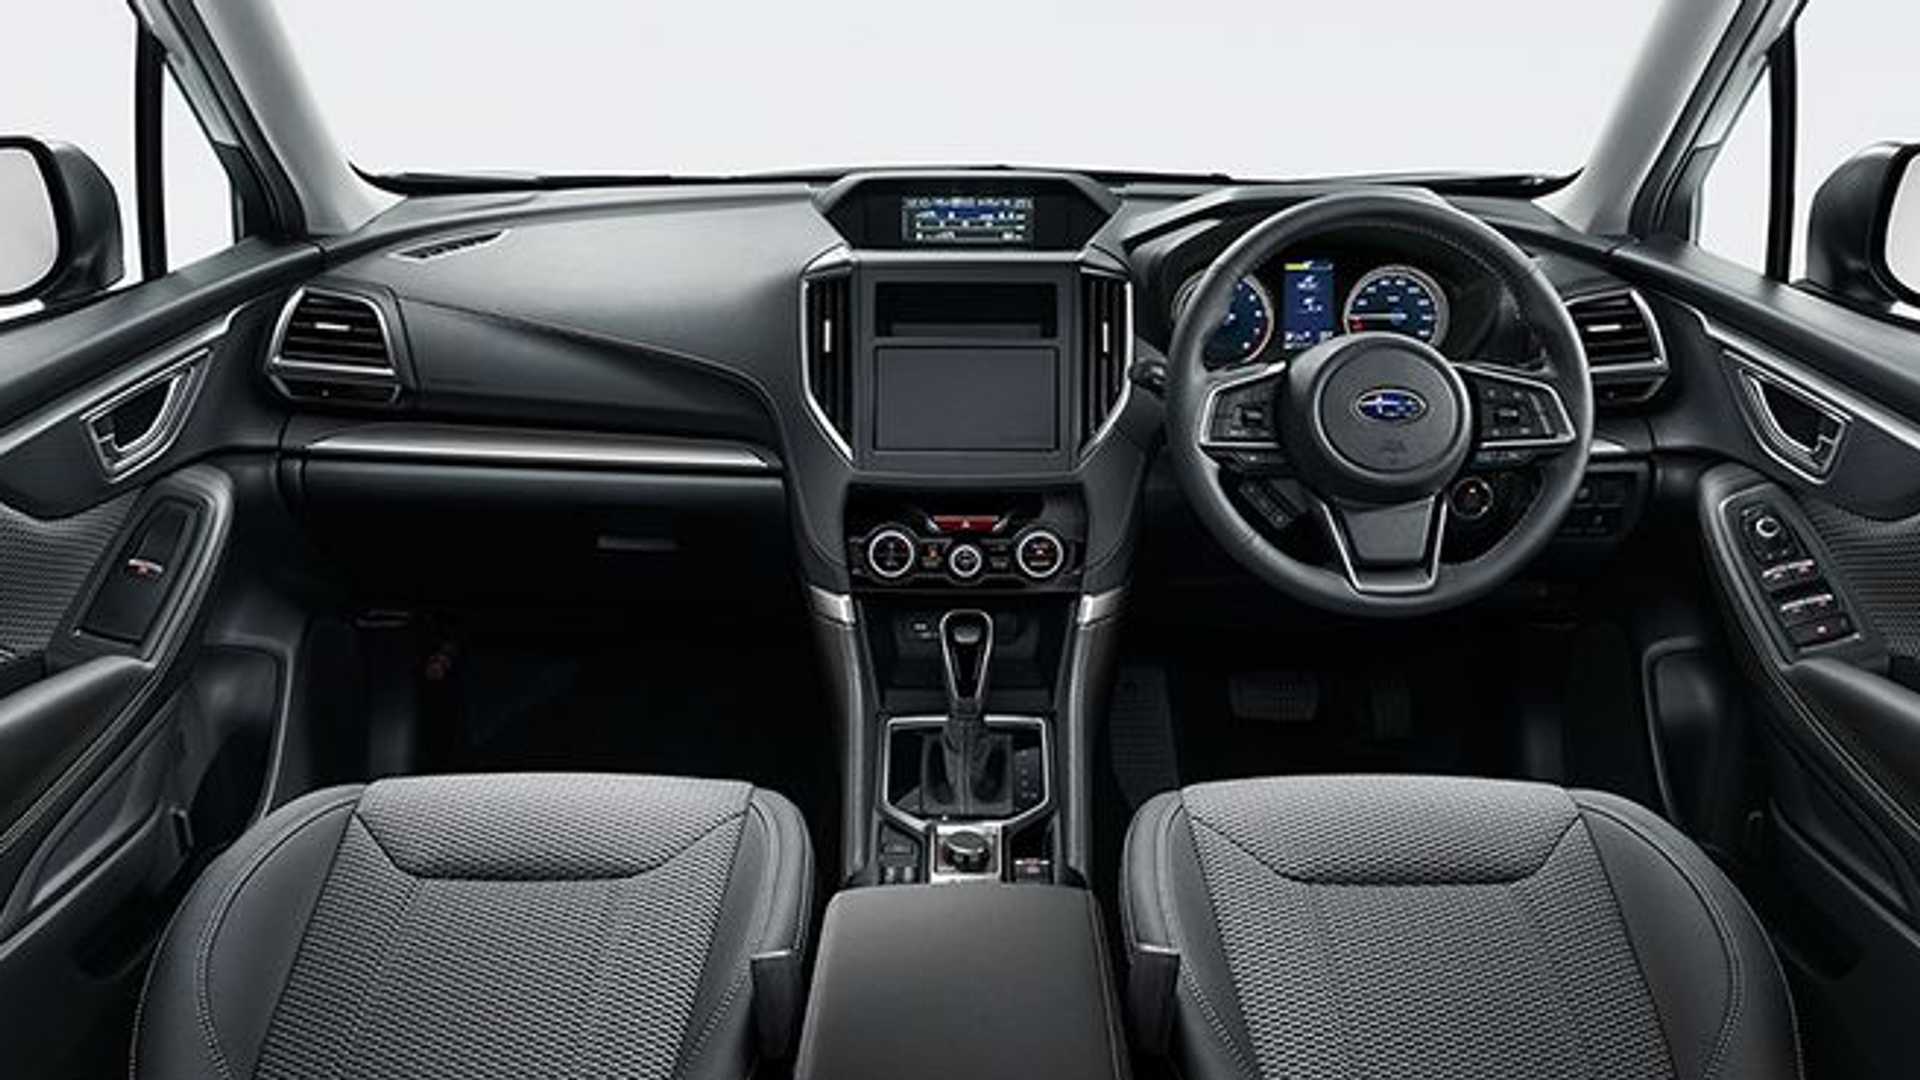 Bên trong nội thất, Subaru Forester vẫn giữ nguyên thiết kế tương đồng như phiên bản tiền nhiệm, với các thiết kế ở bảng đồng hồ, khu vực màn hình giải trí, màn hình hỗ trợ vận hành.